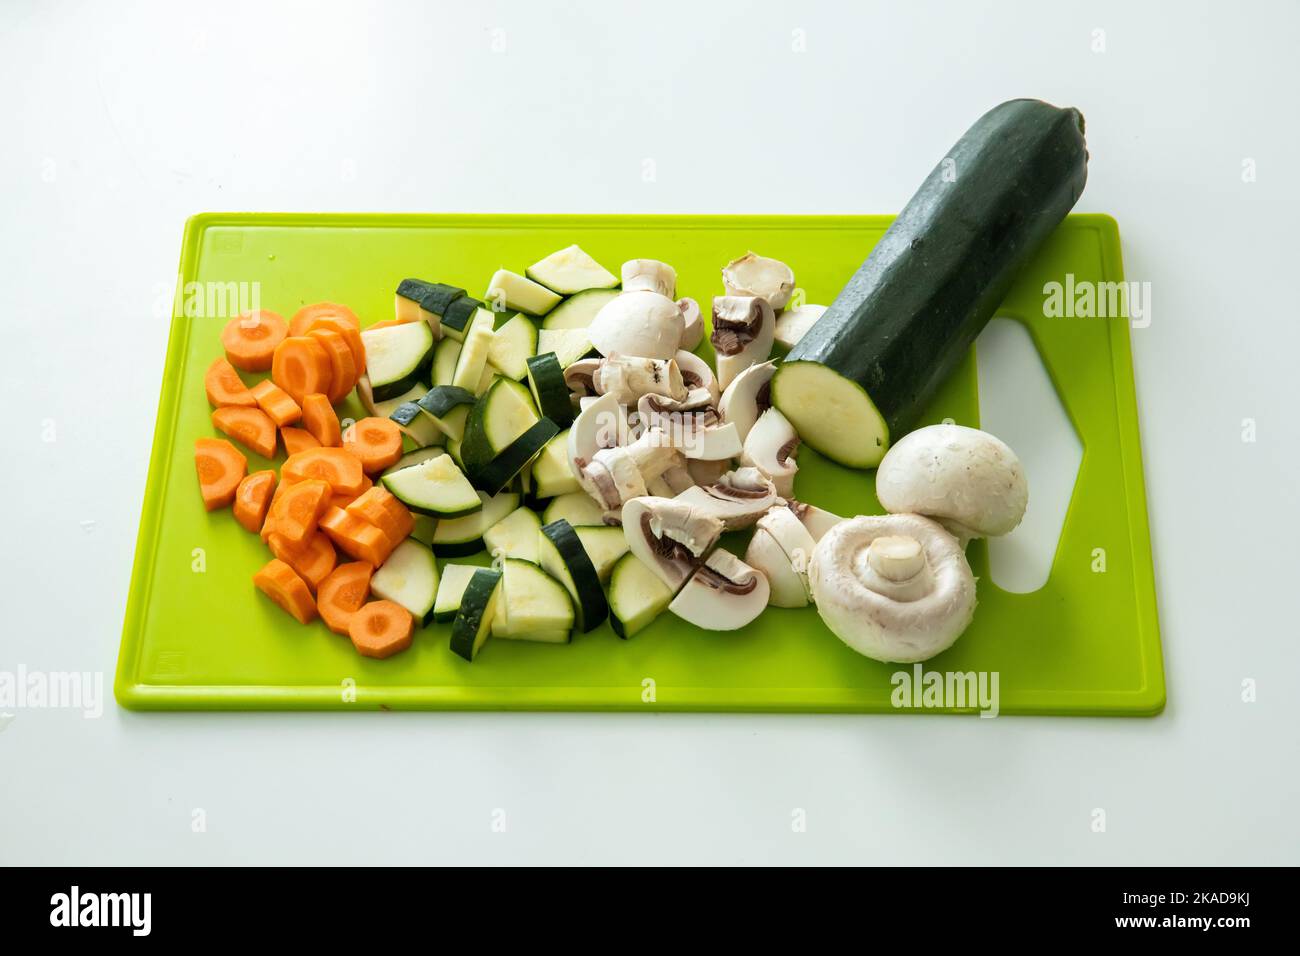 Une belle photo de courgettes hachées, de carottes et de champignons sur un tableau de cuisine vert Banque D'Images